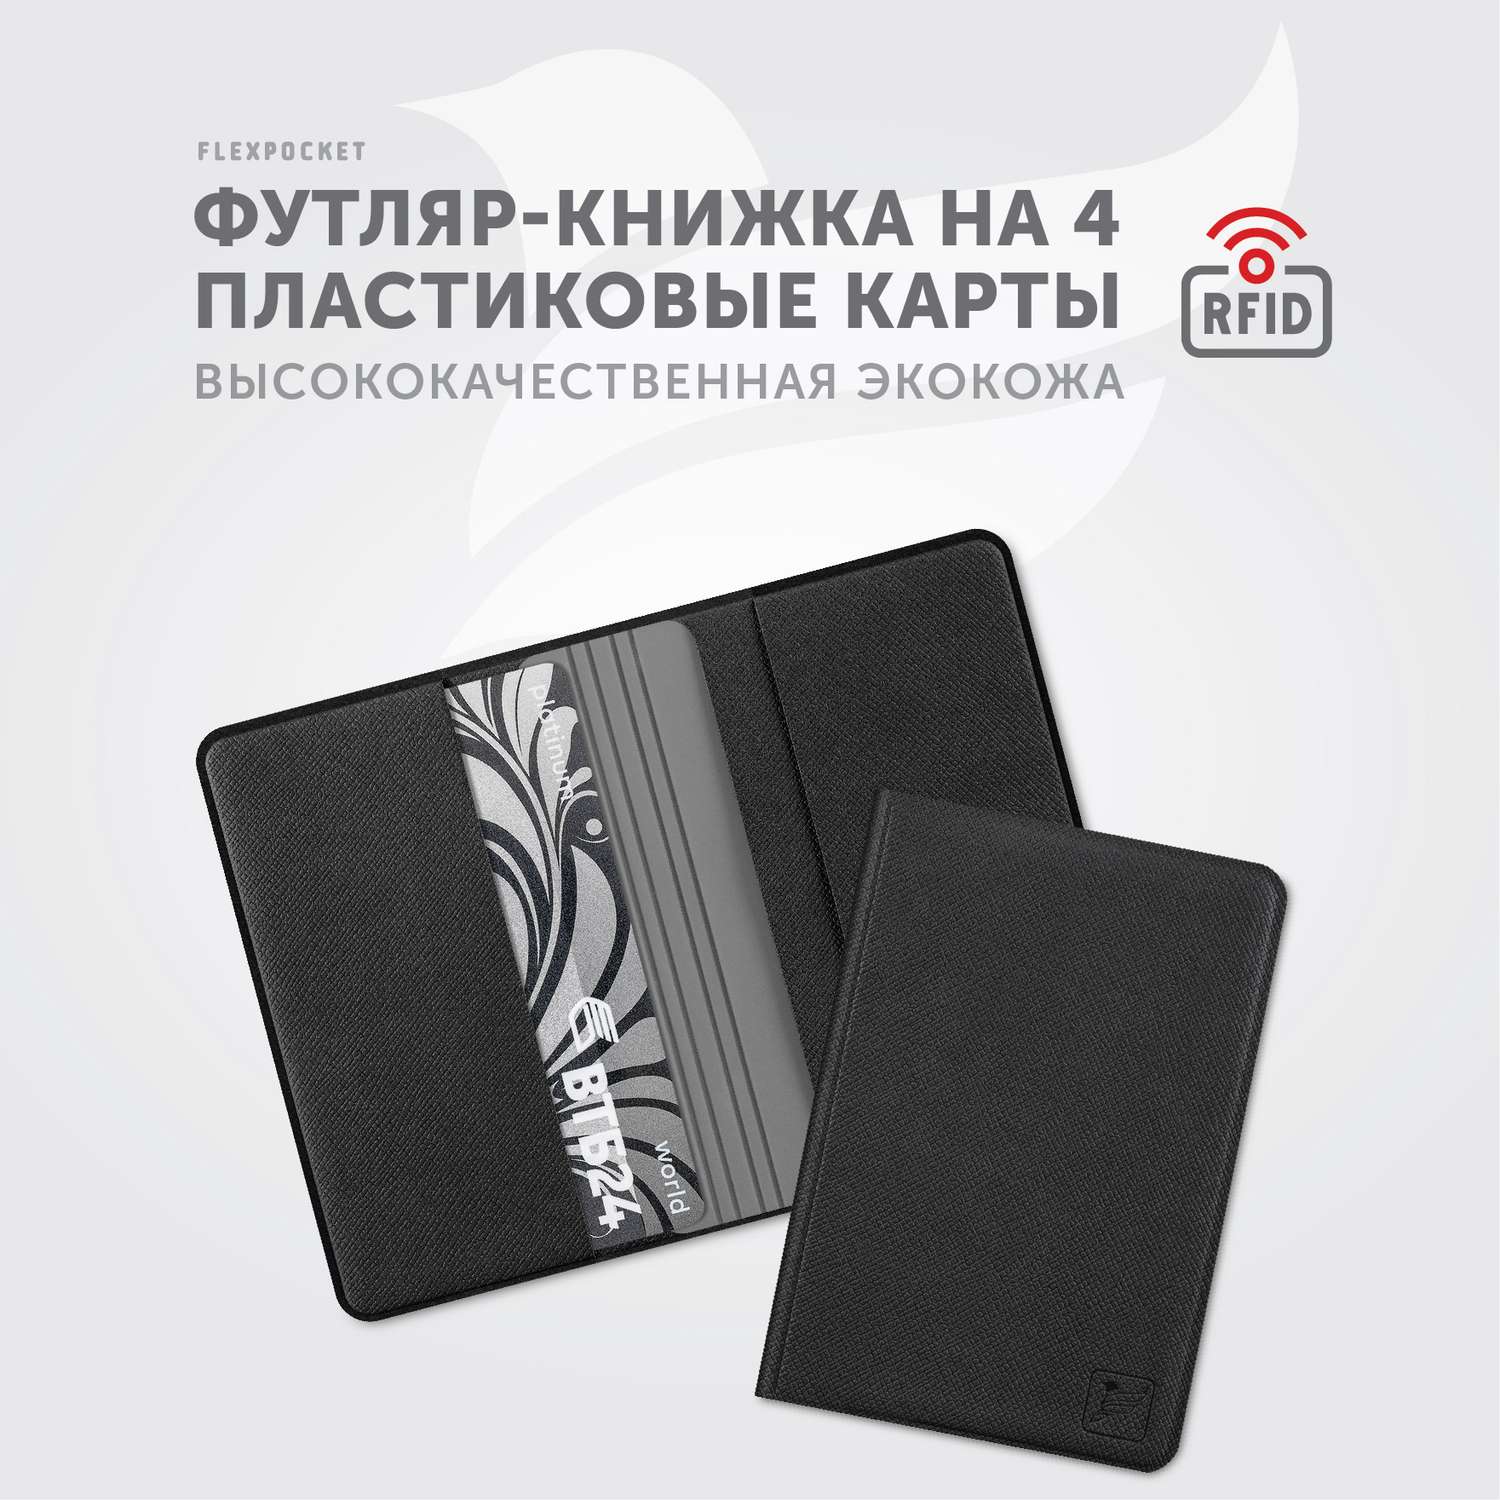 Картхолдер с RFID-защитой Flexpocket FKKR-4E/Черно-серый - фото 2